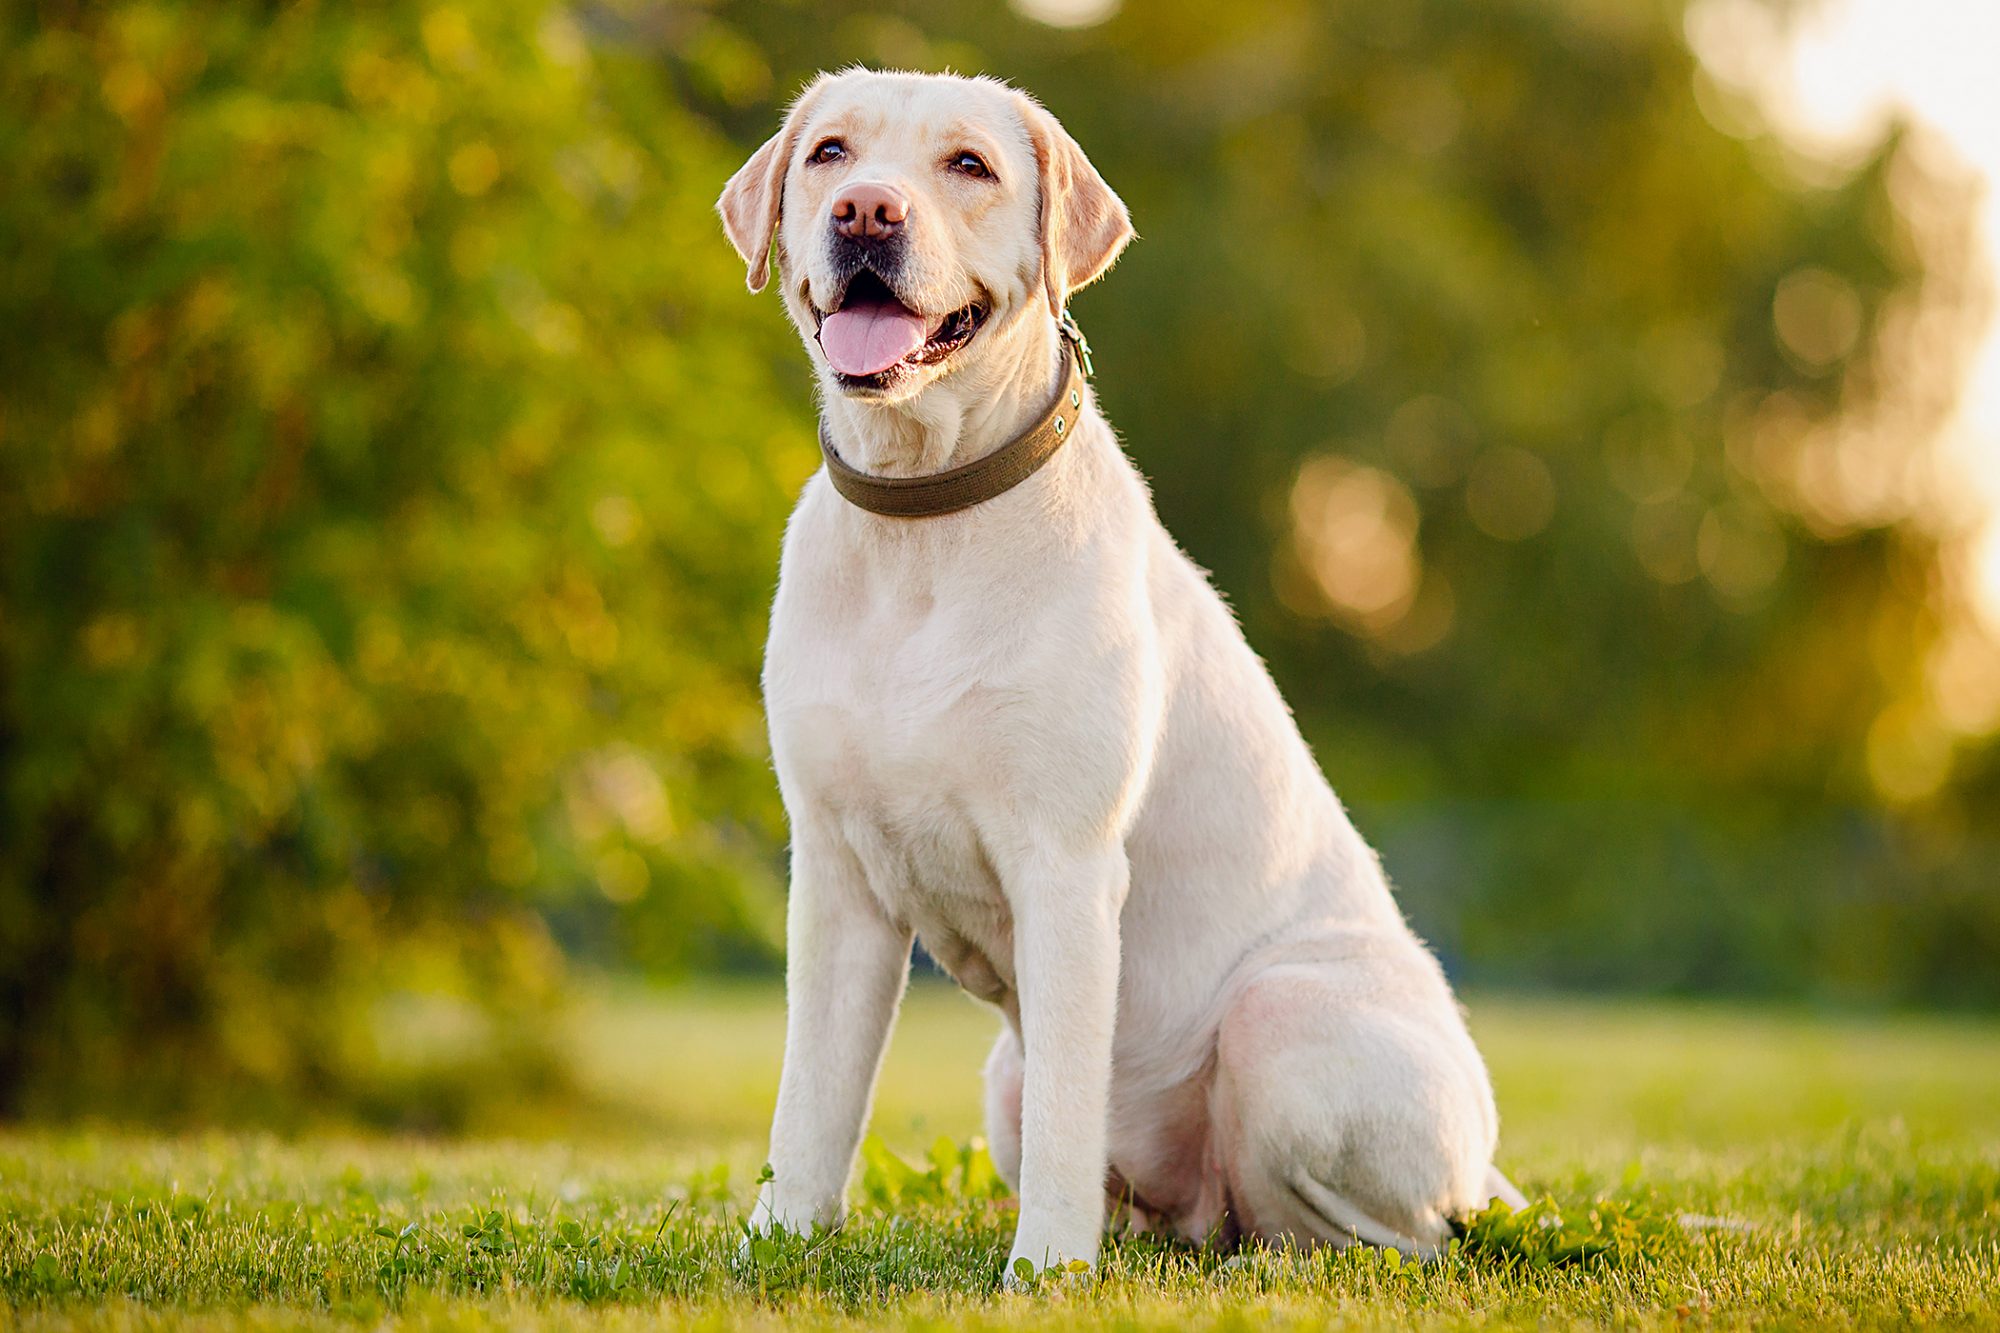 Labrador Retriever cutest dog breeds